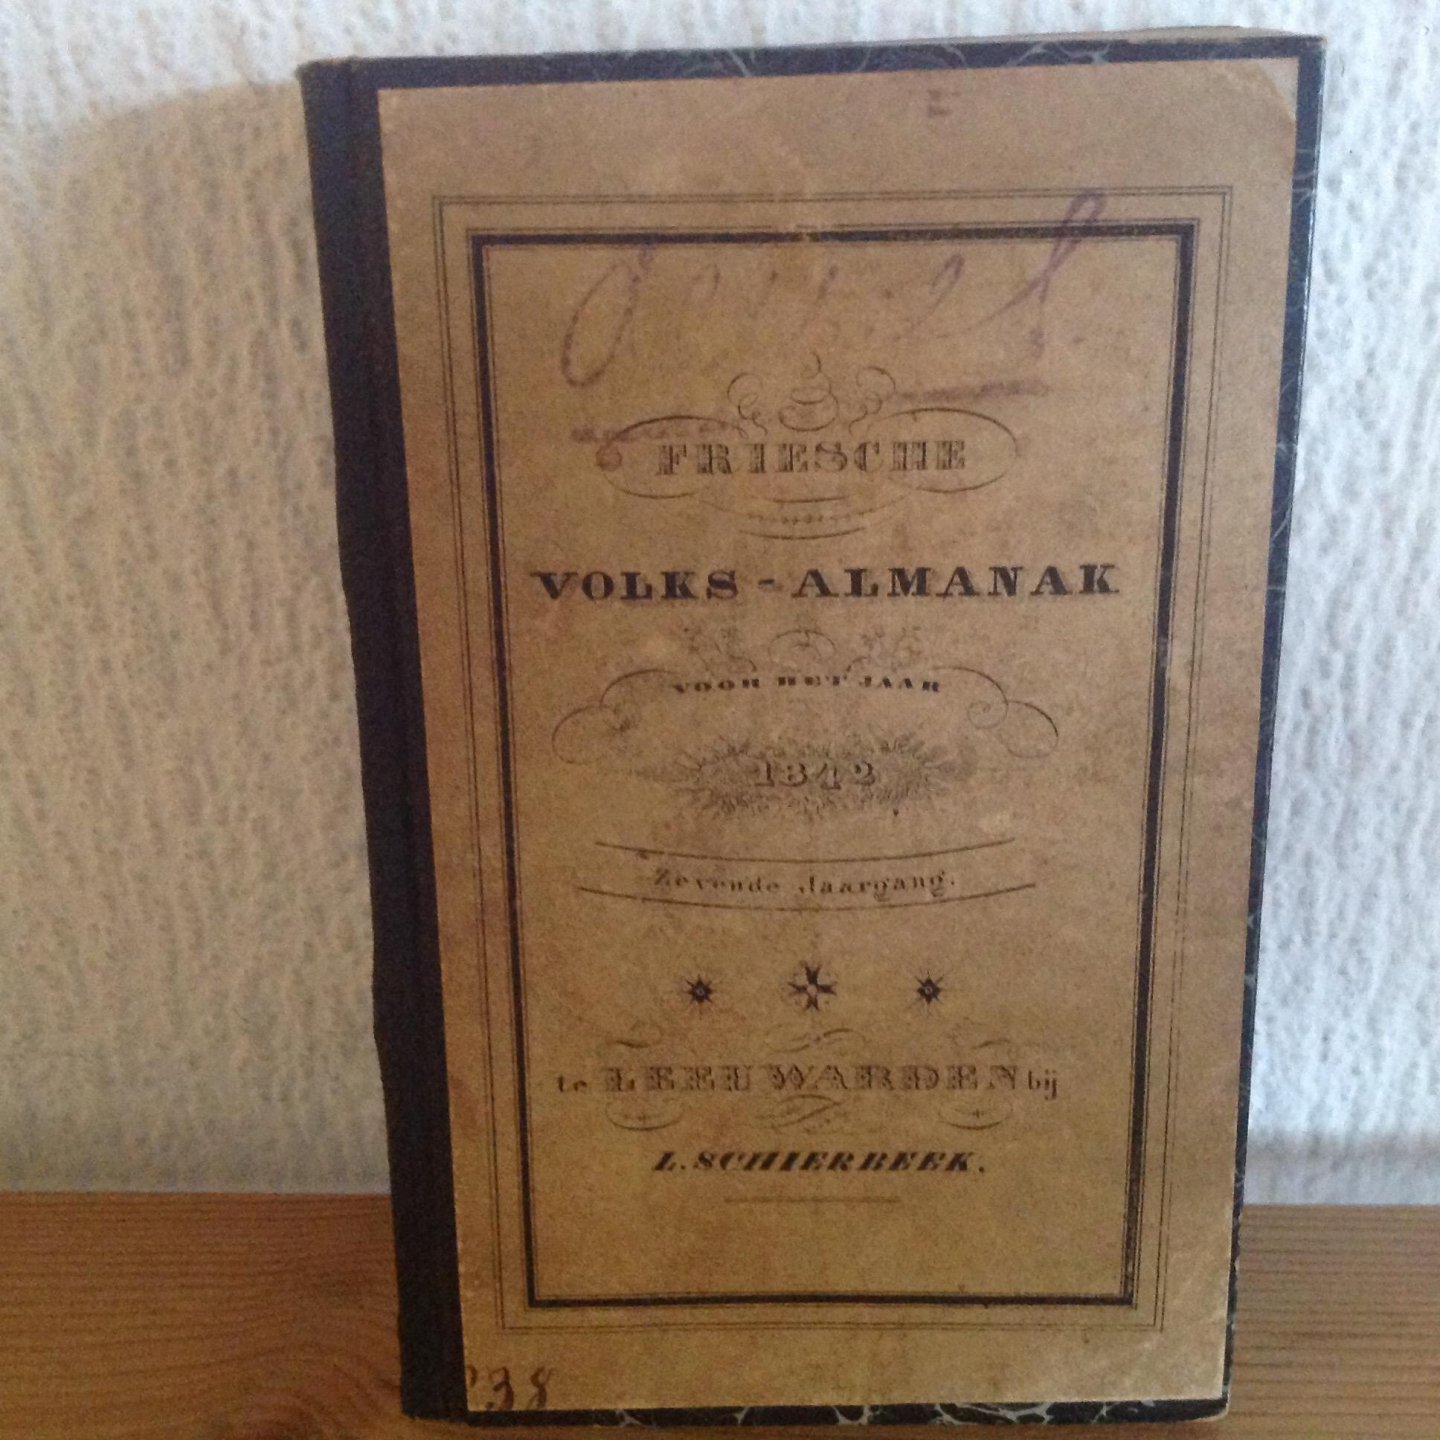  - Friesche Volksalmanak ,1842 ,zevende jaargang